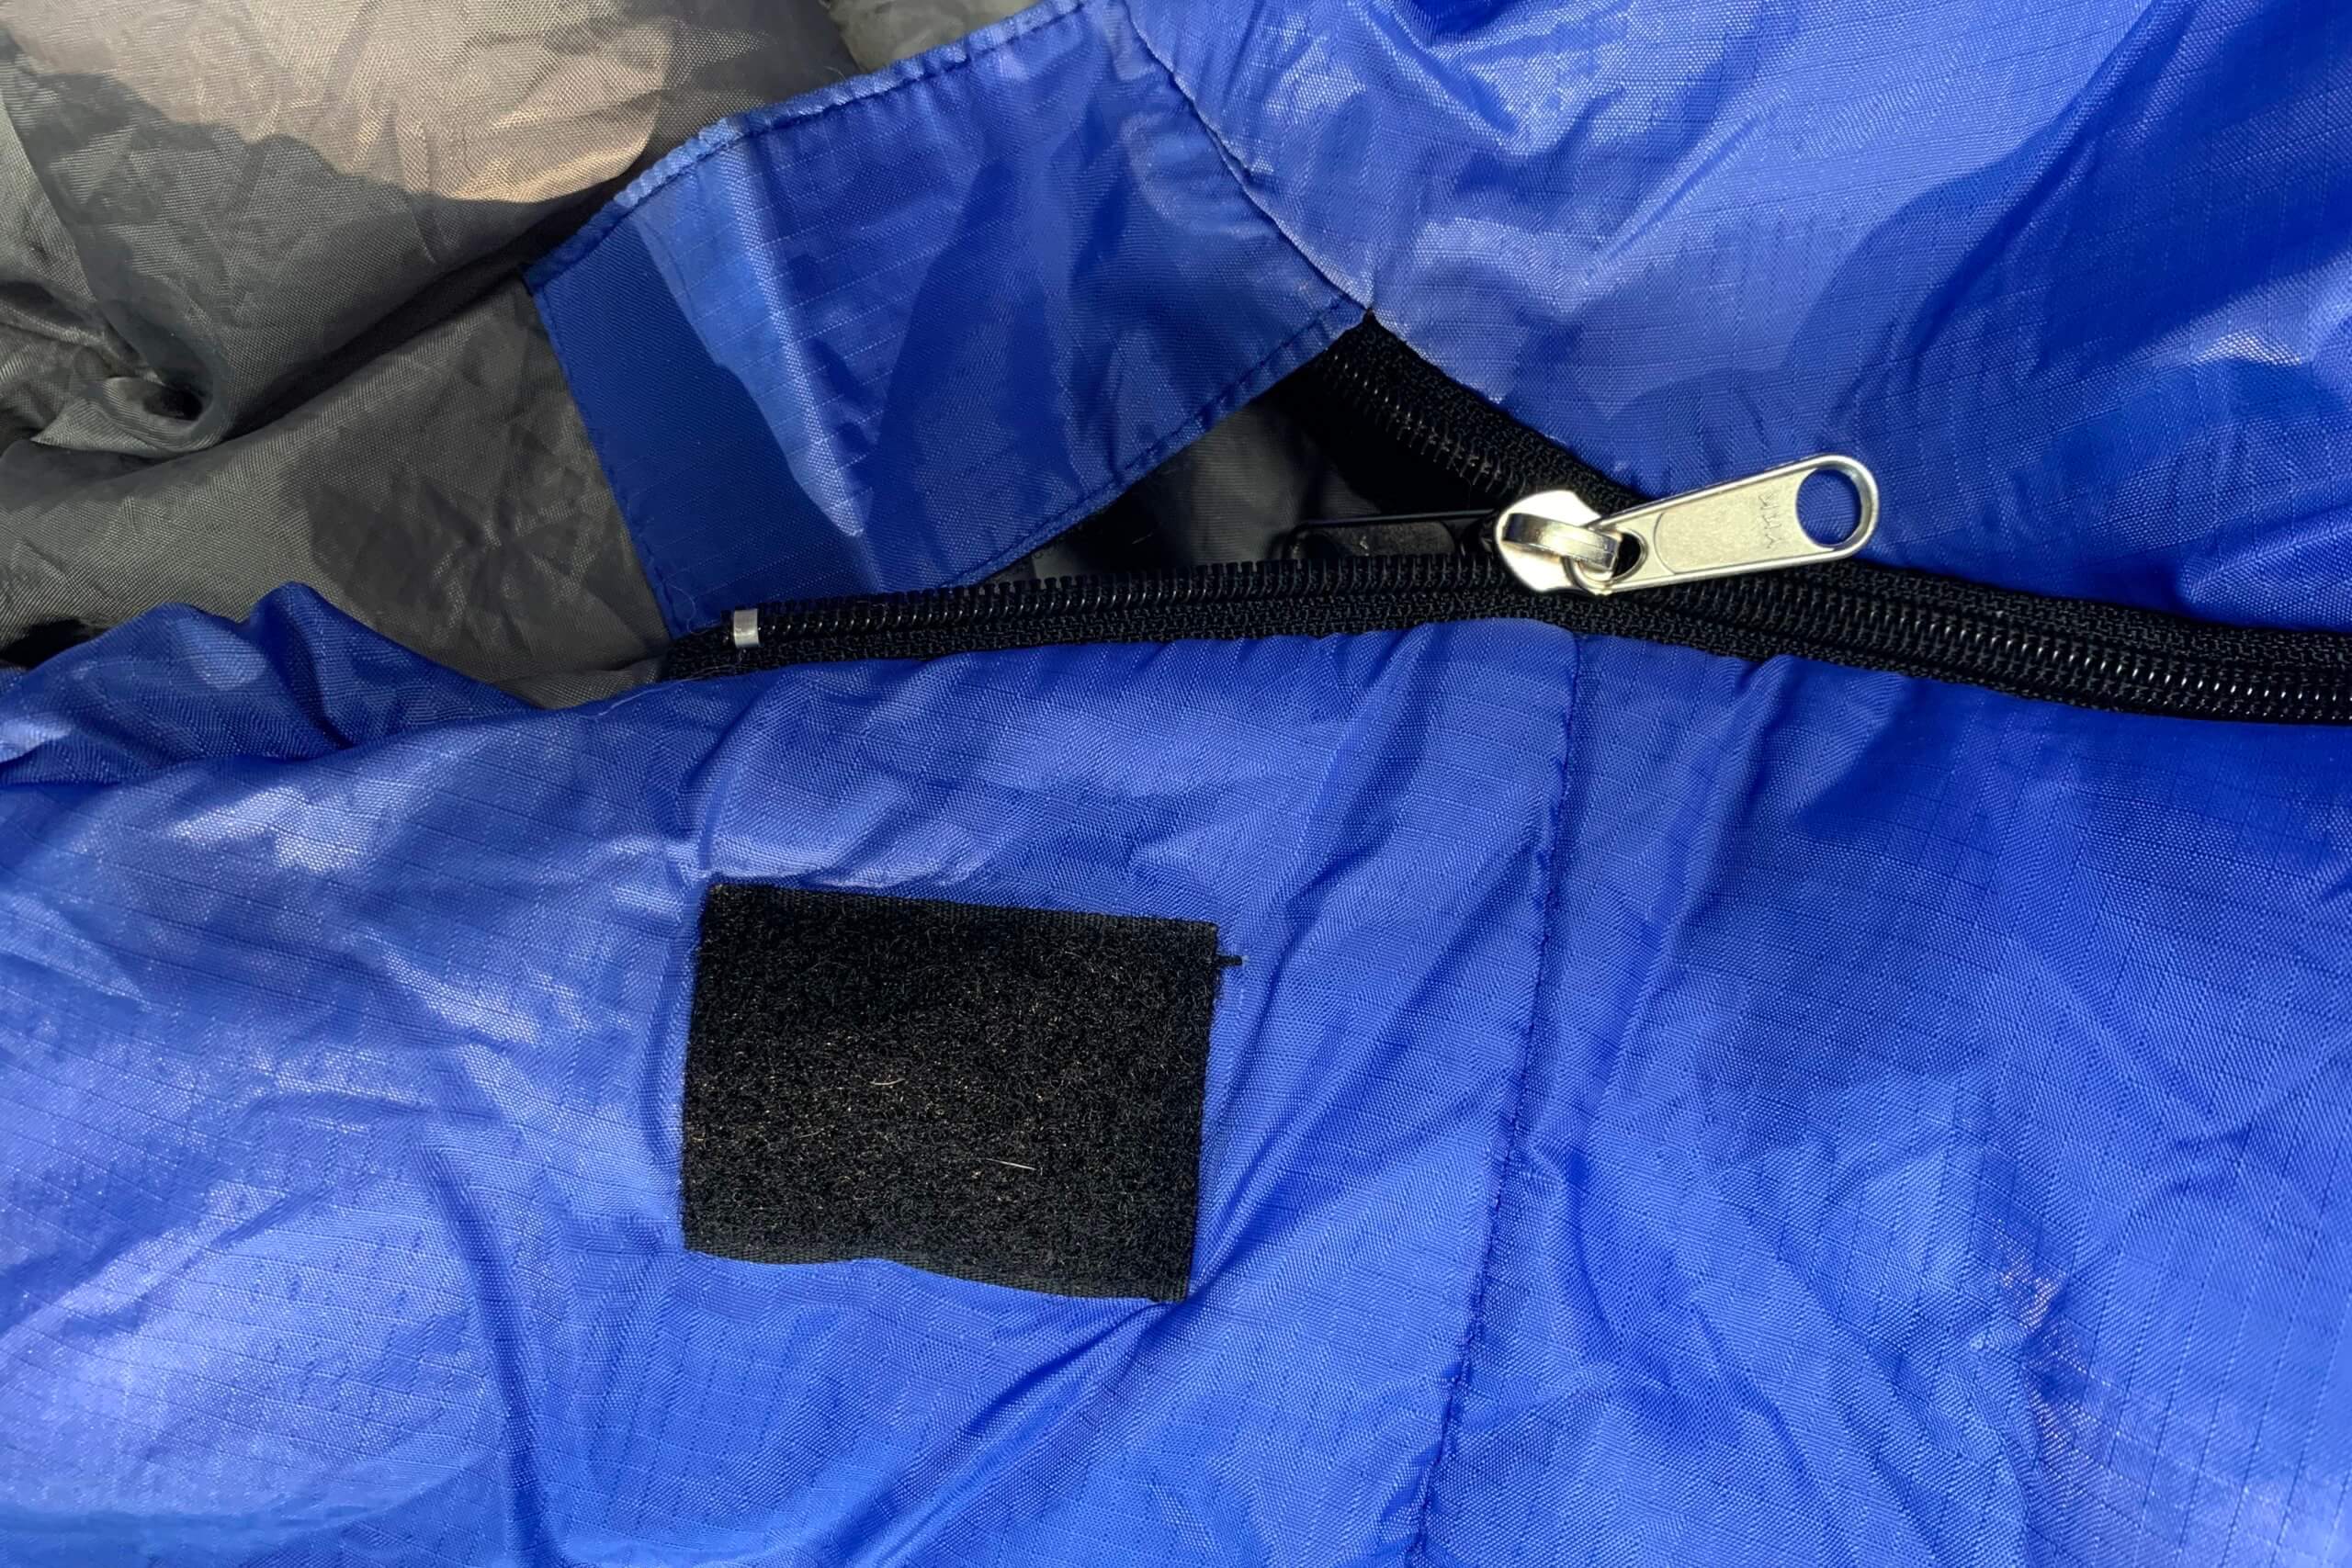 How to Fix a Zipper on a Sleeping Bag | REI Expert Advice